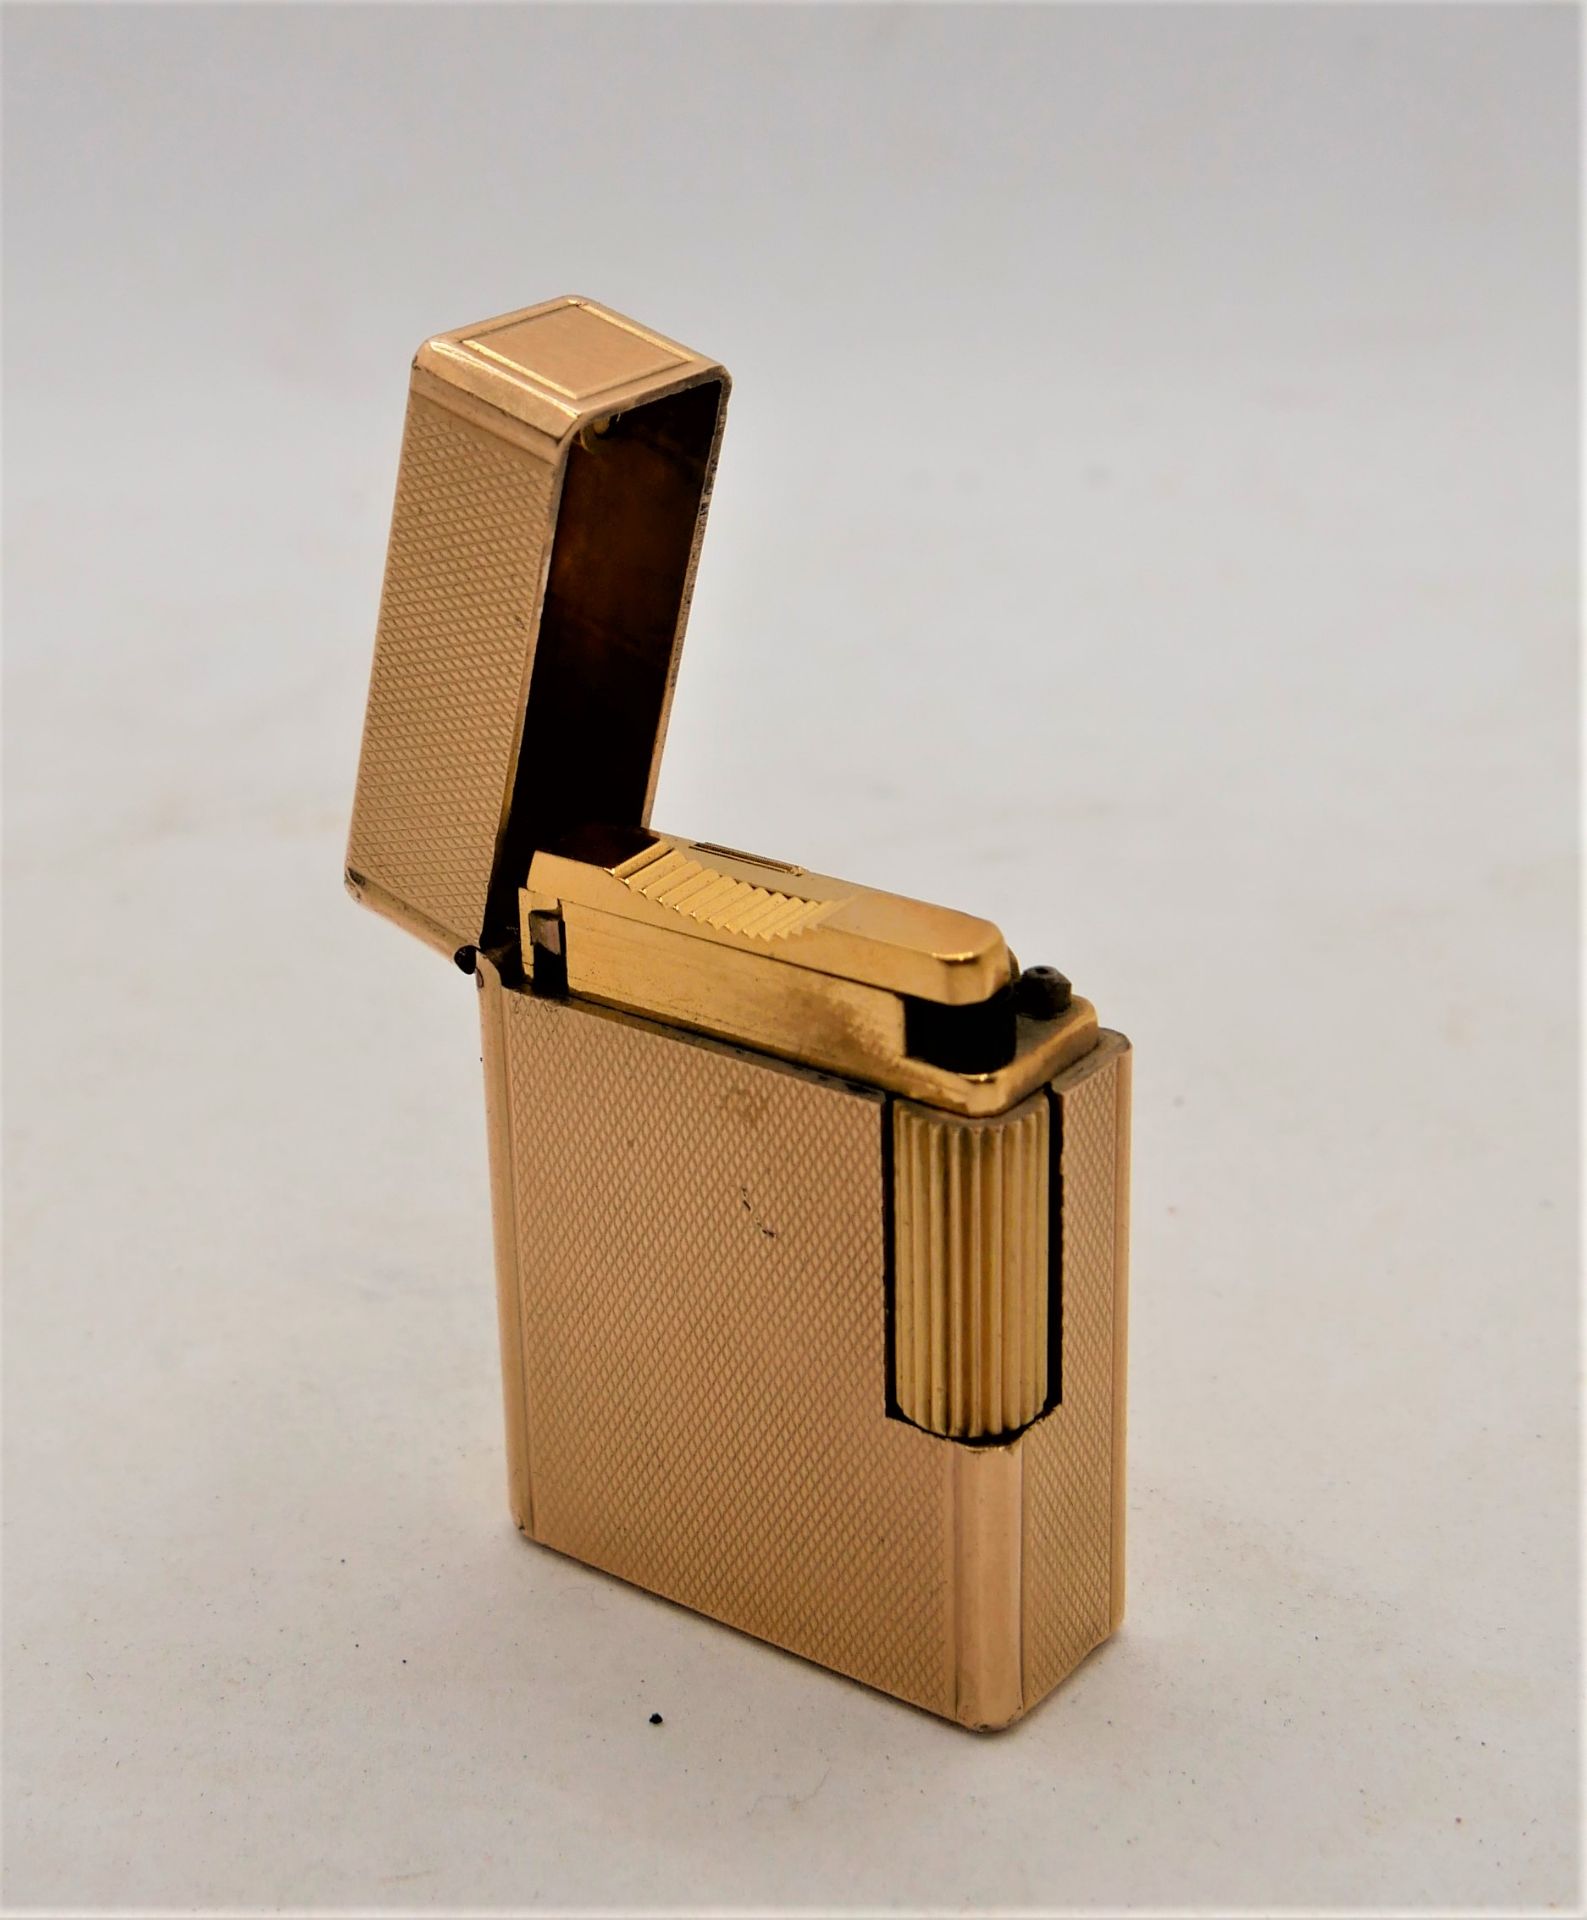 Feuerzeug S.T.Dupont Paris, Made in France, Nr. 20 u, vergoldet. Funktion geprüft. Gebrauchter - Image 3 of 4